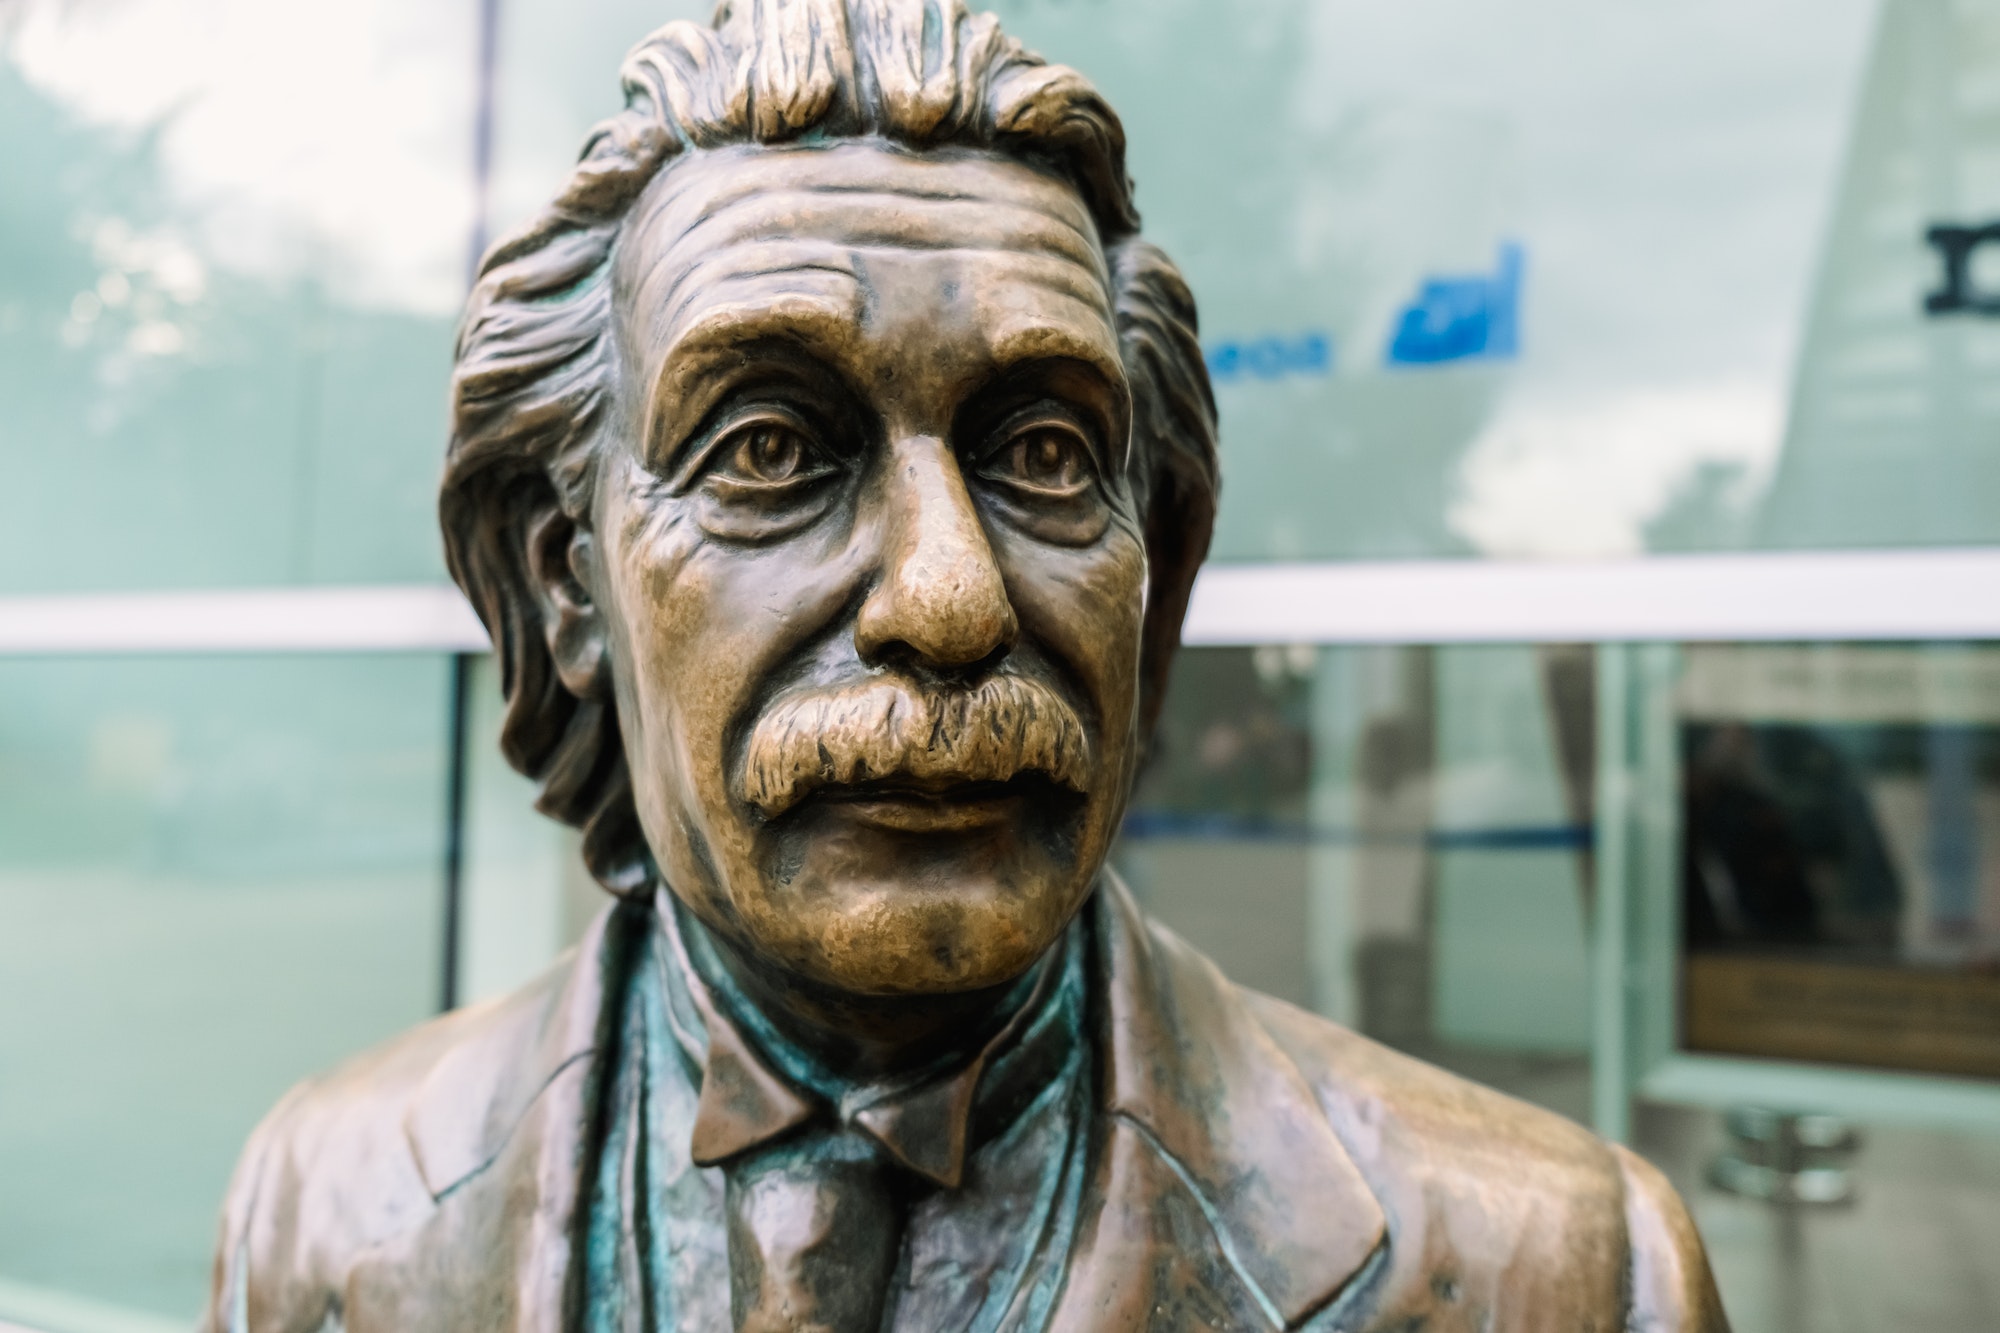 Statue of the scientist Albert Einstein in a public park.